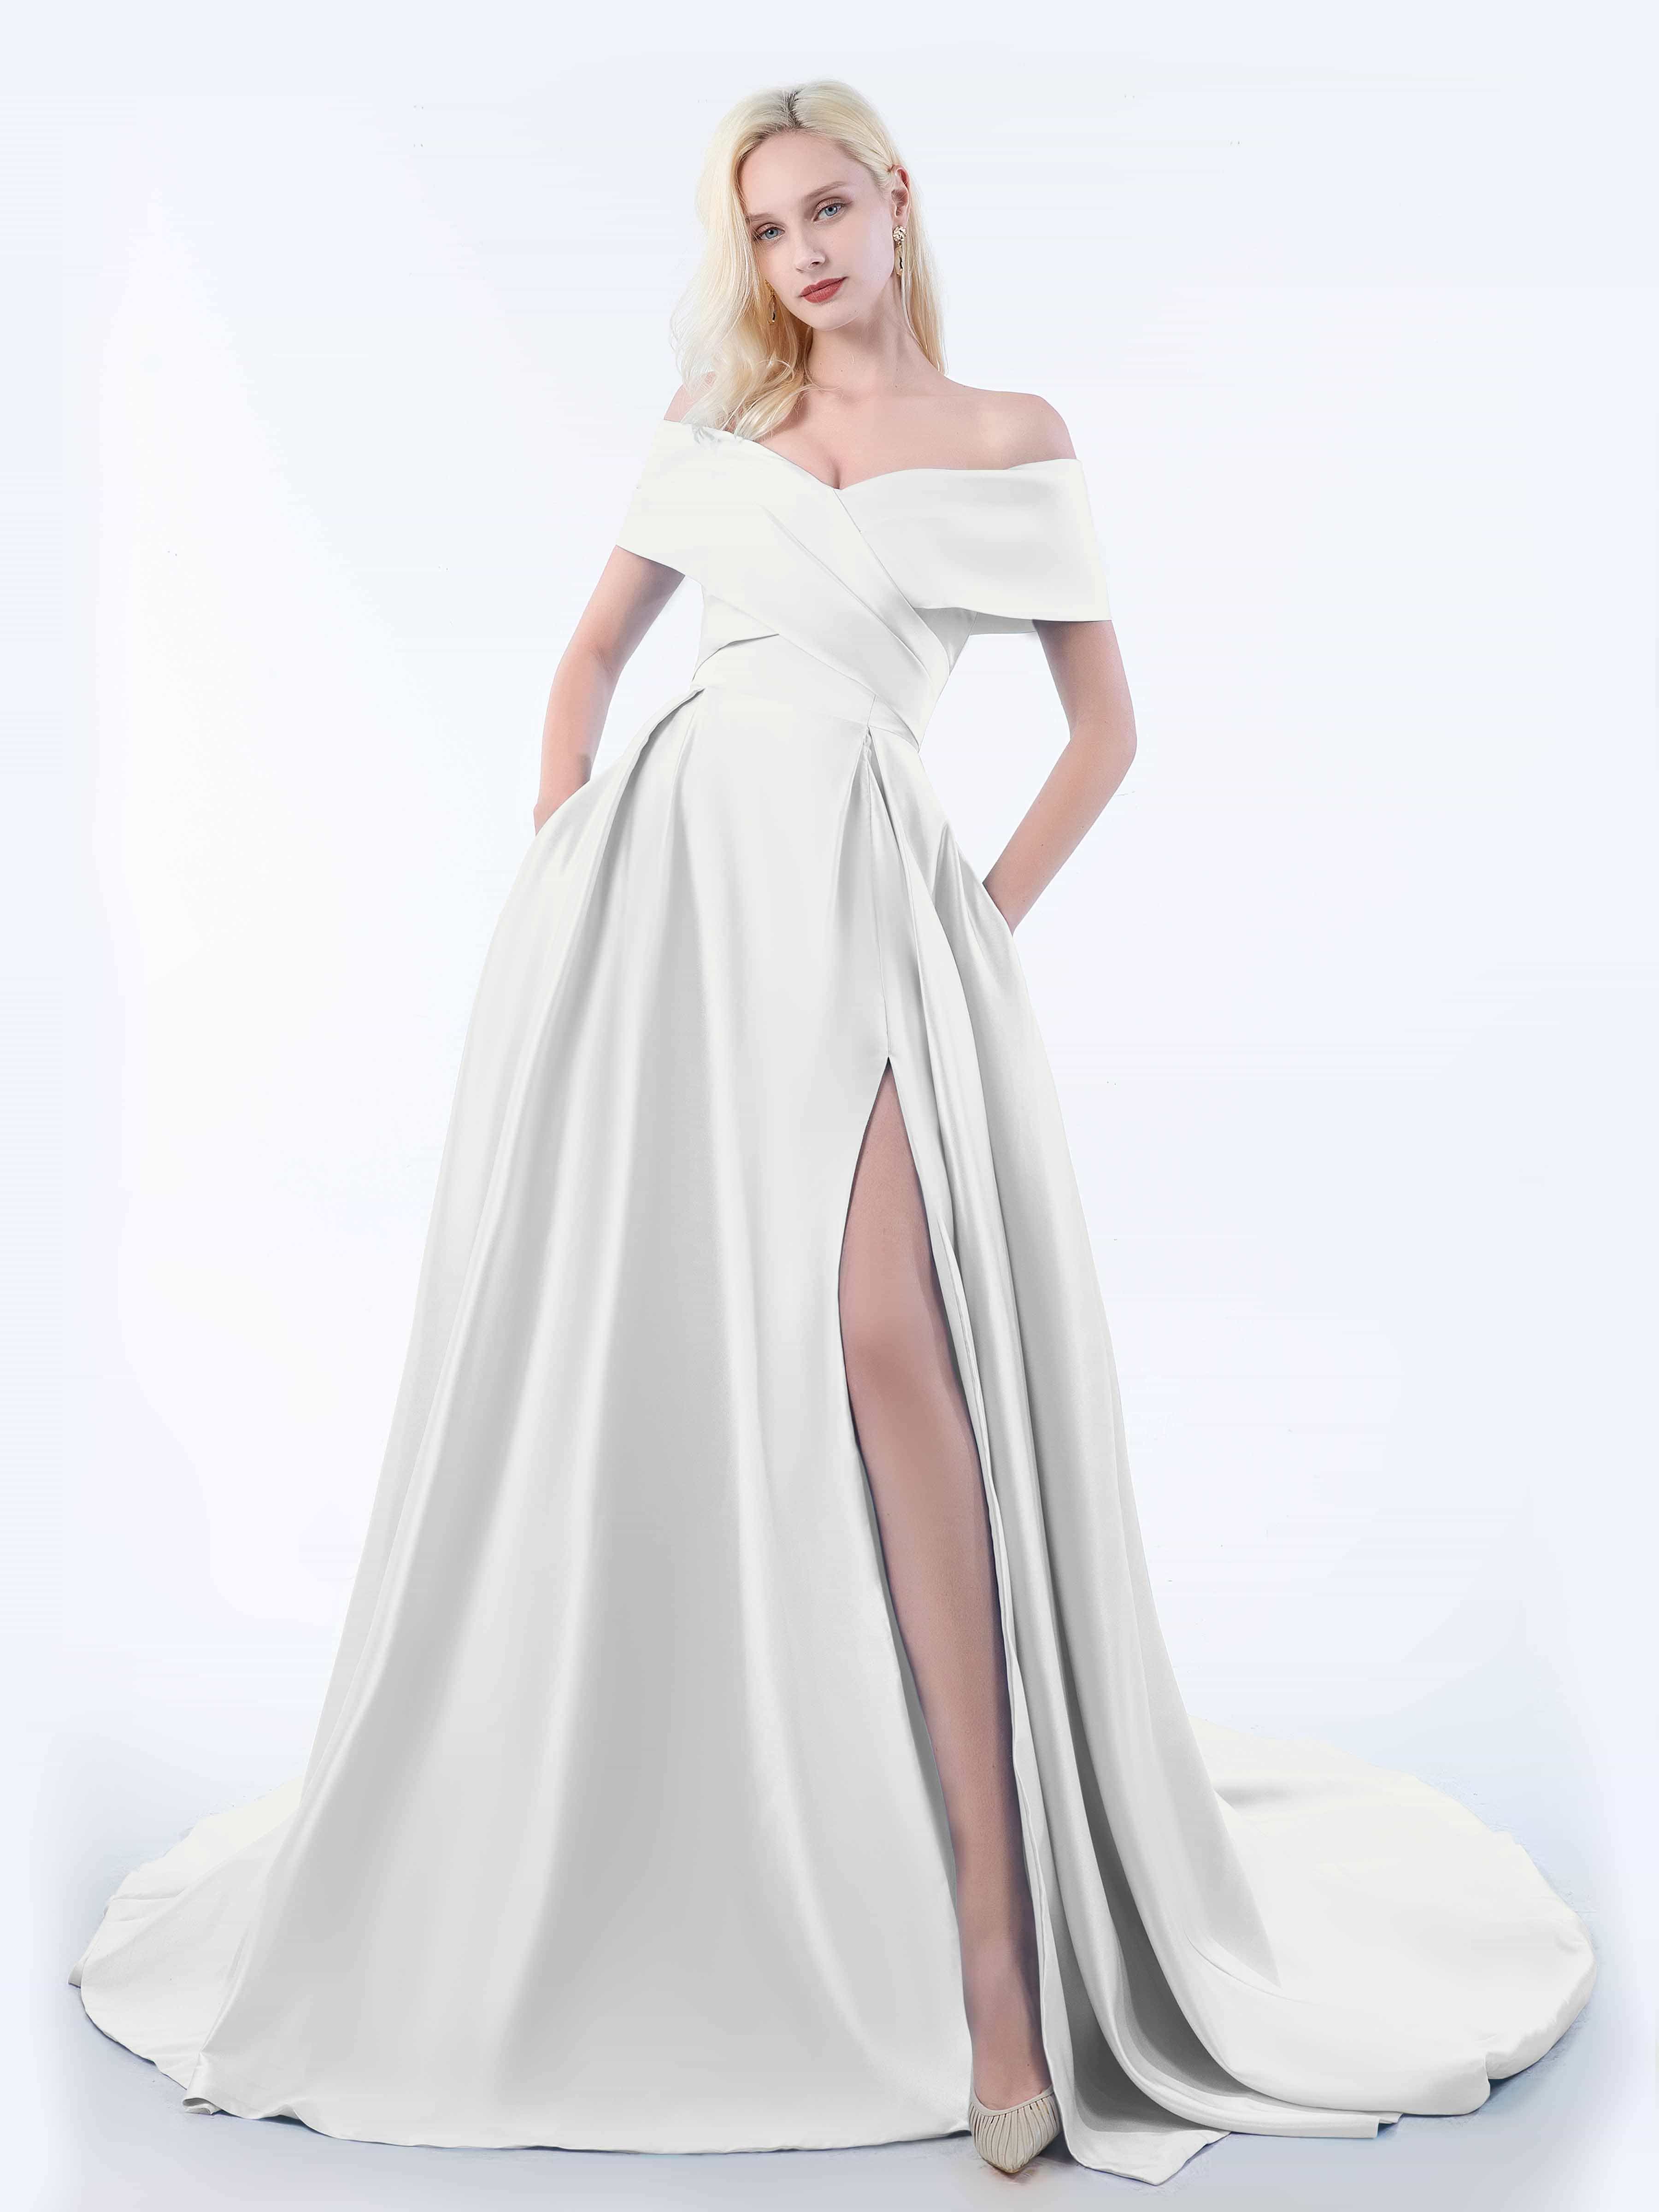 Violet Bridal Dress